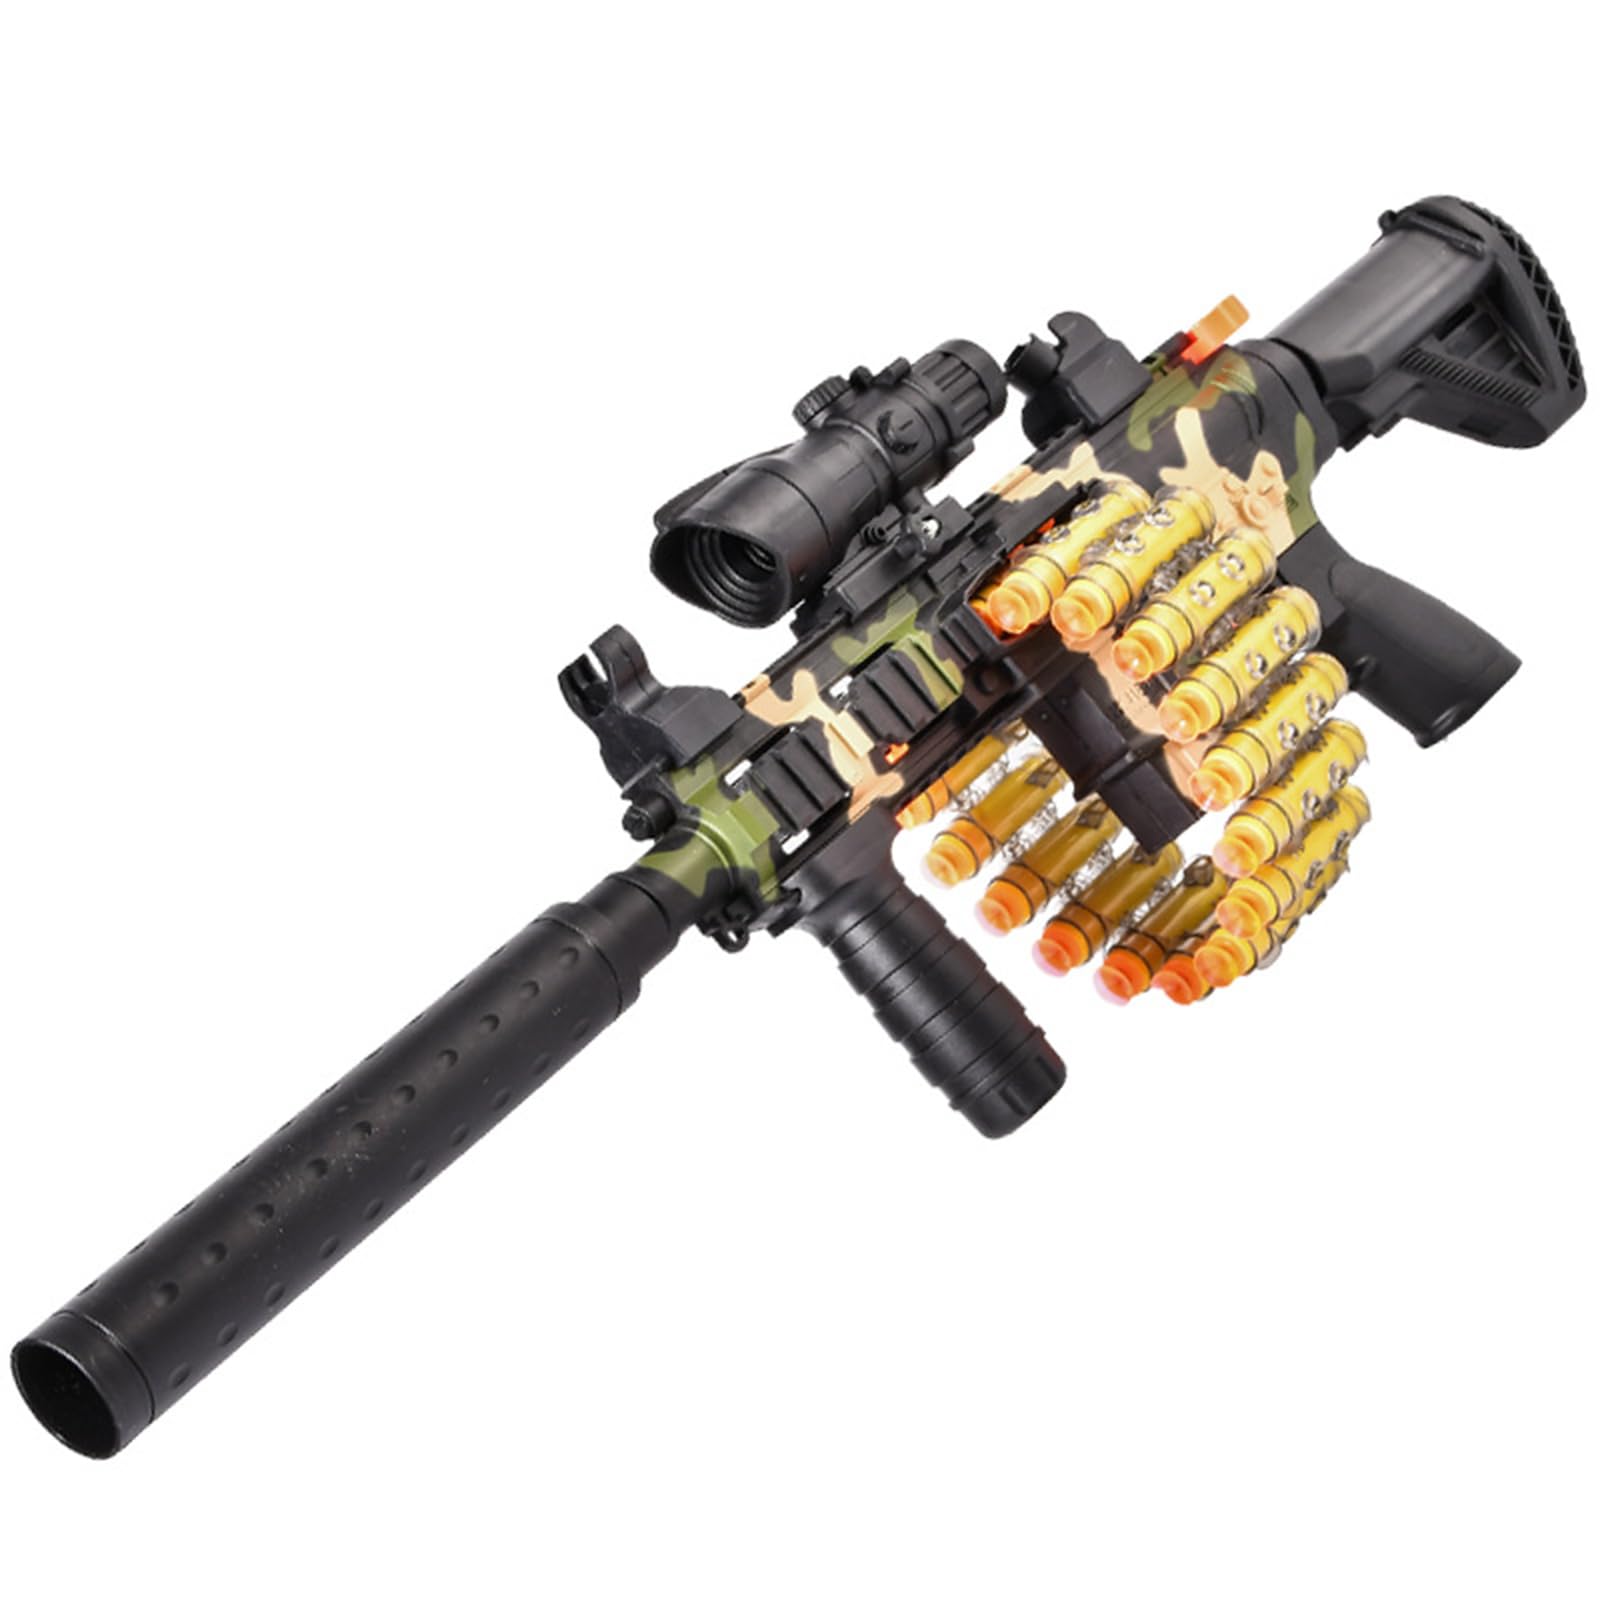 スポンジ銃 おもちゃ 電動 ショットガン 3種射撃モード 男の子 プレゼント